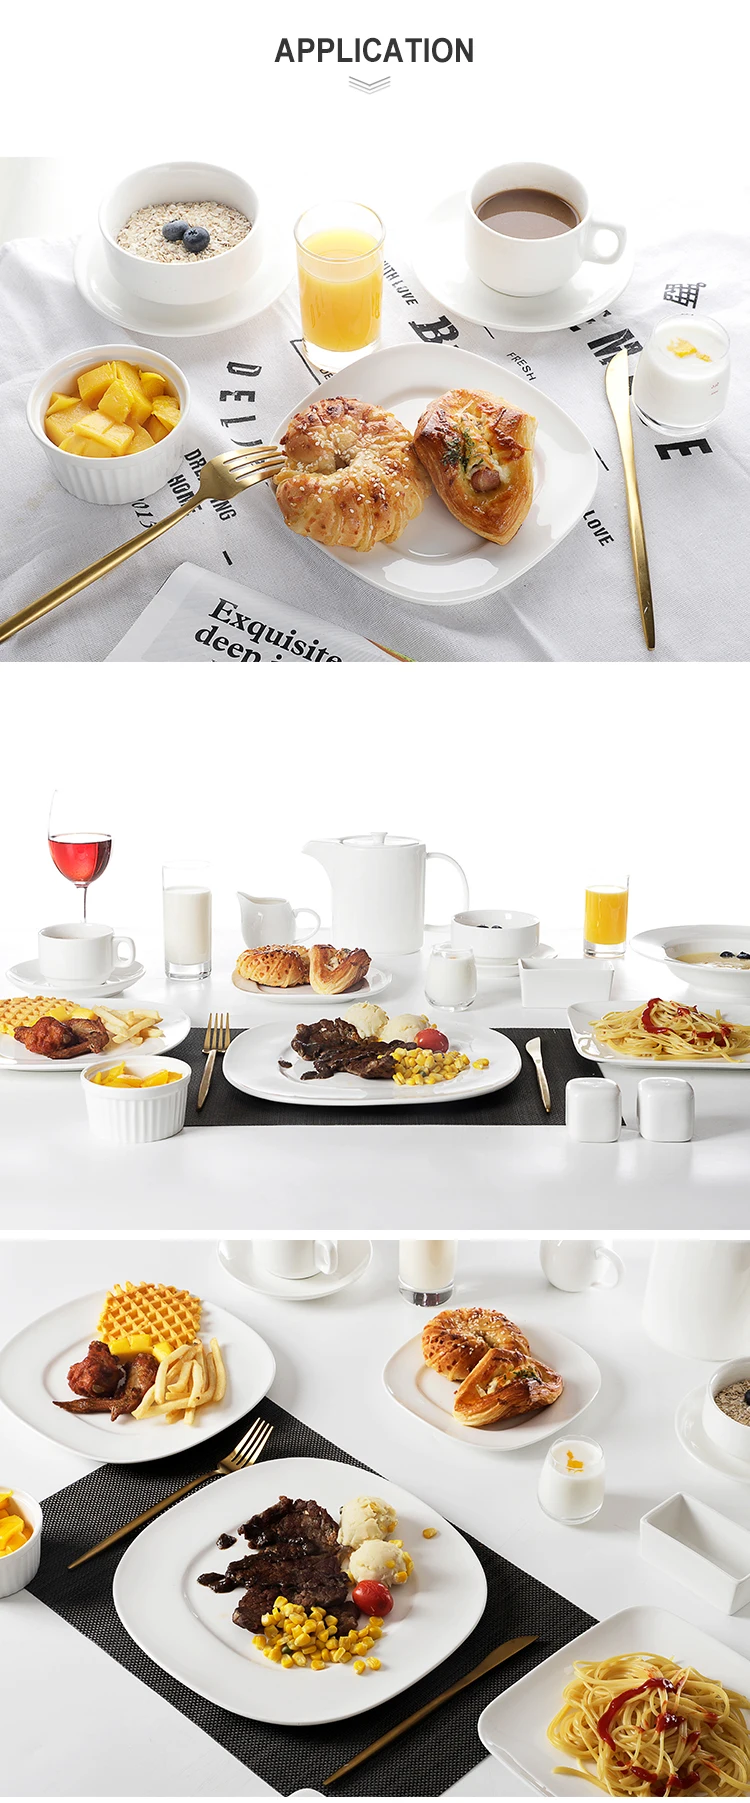 product-Hosen Royal White Fine Porcelain Plate, Designed Plates Ceramics Dinner, Base Dinner Crystal